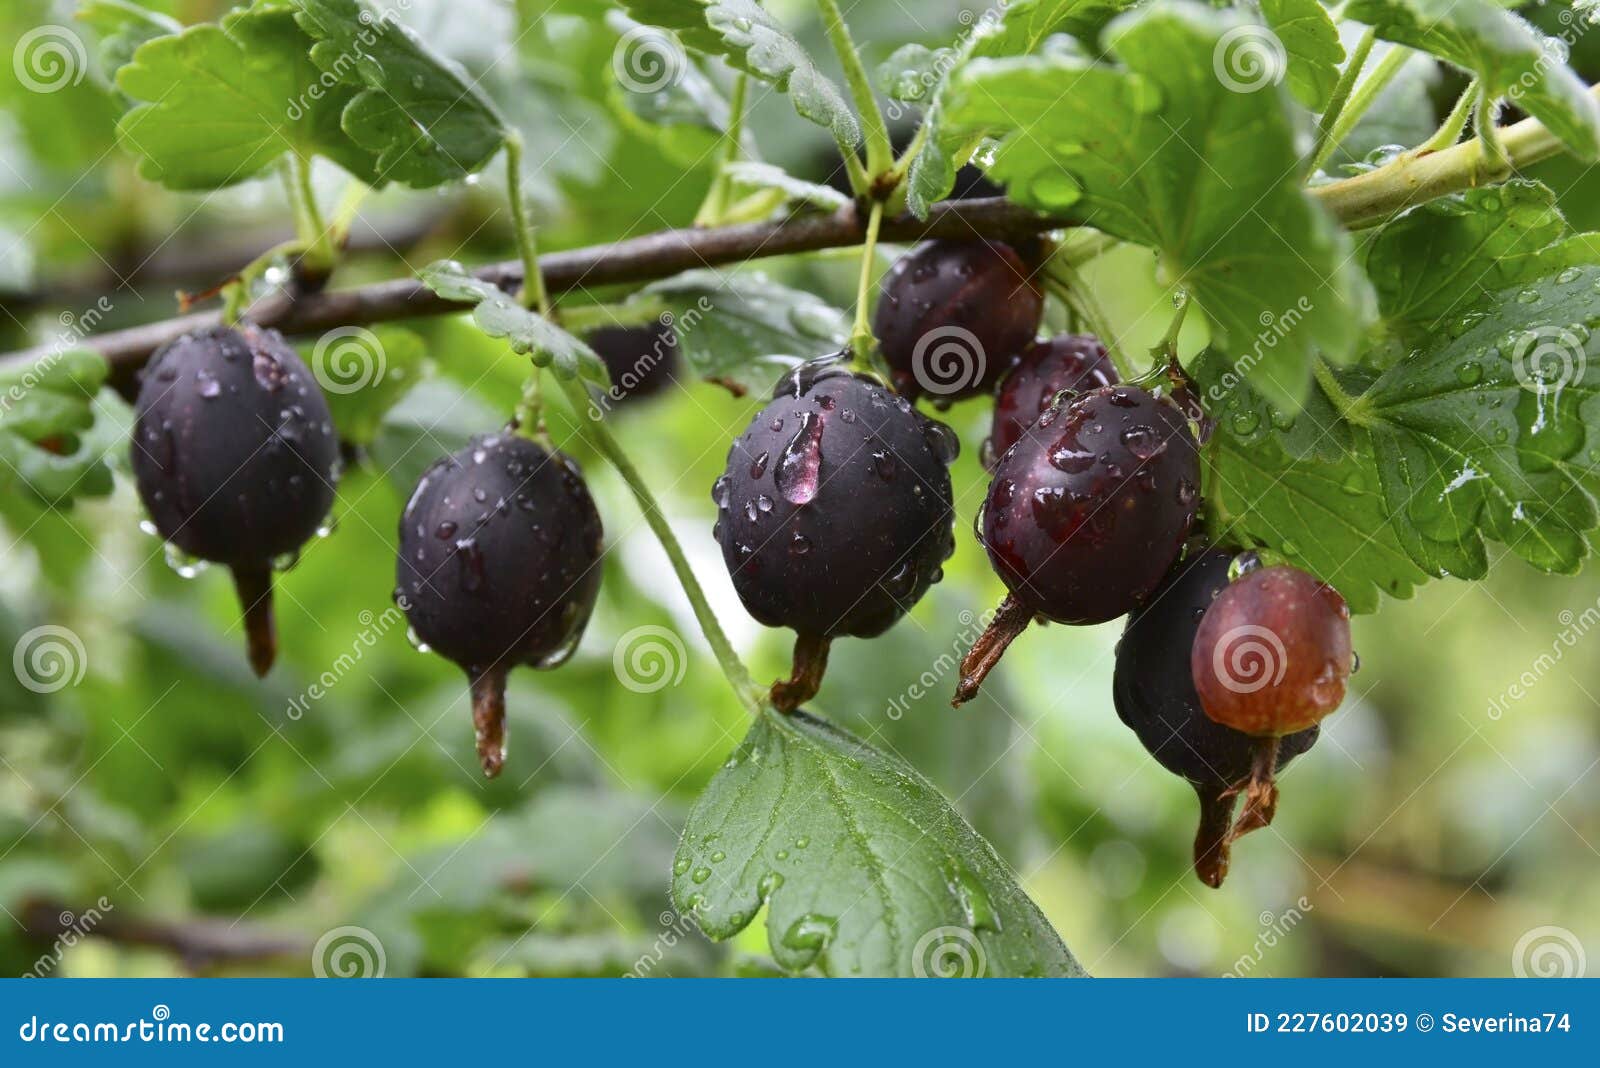 Jostaberry Ribes Times Nidigrolaria гибрид черной смородины и крыжовника всаду. ветвь с спелыми ягодами Стоковое Изображение - изображениенасчитывающей флора, группа: 227602039